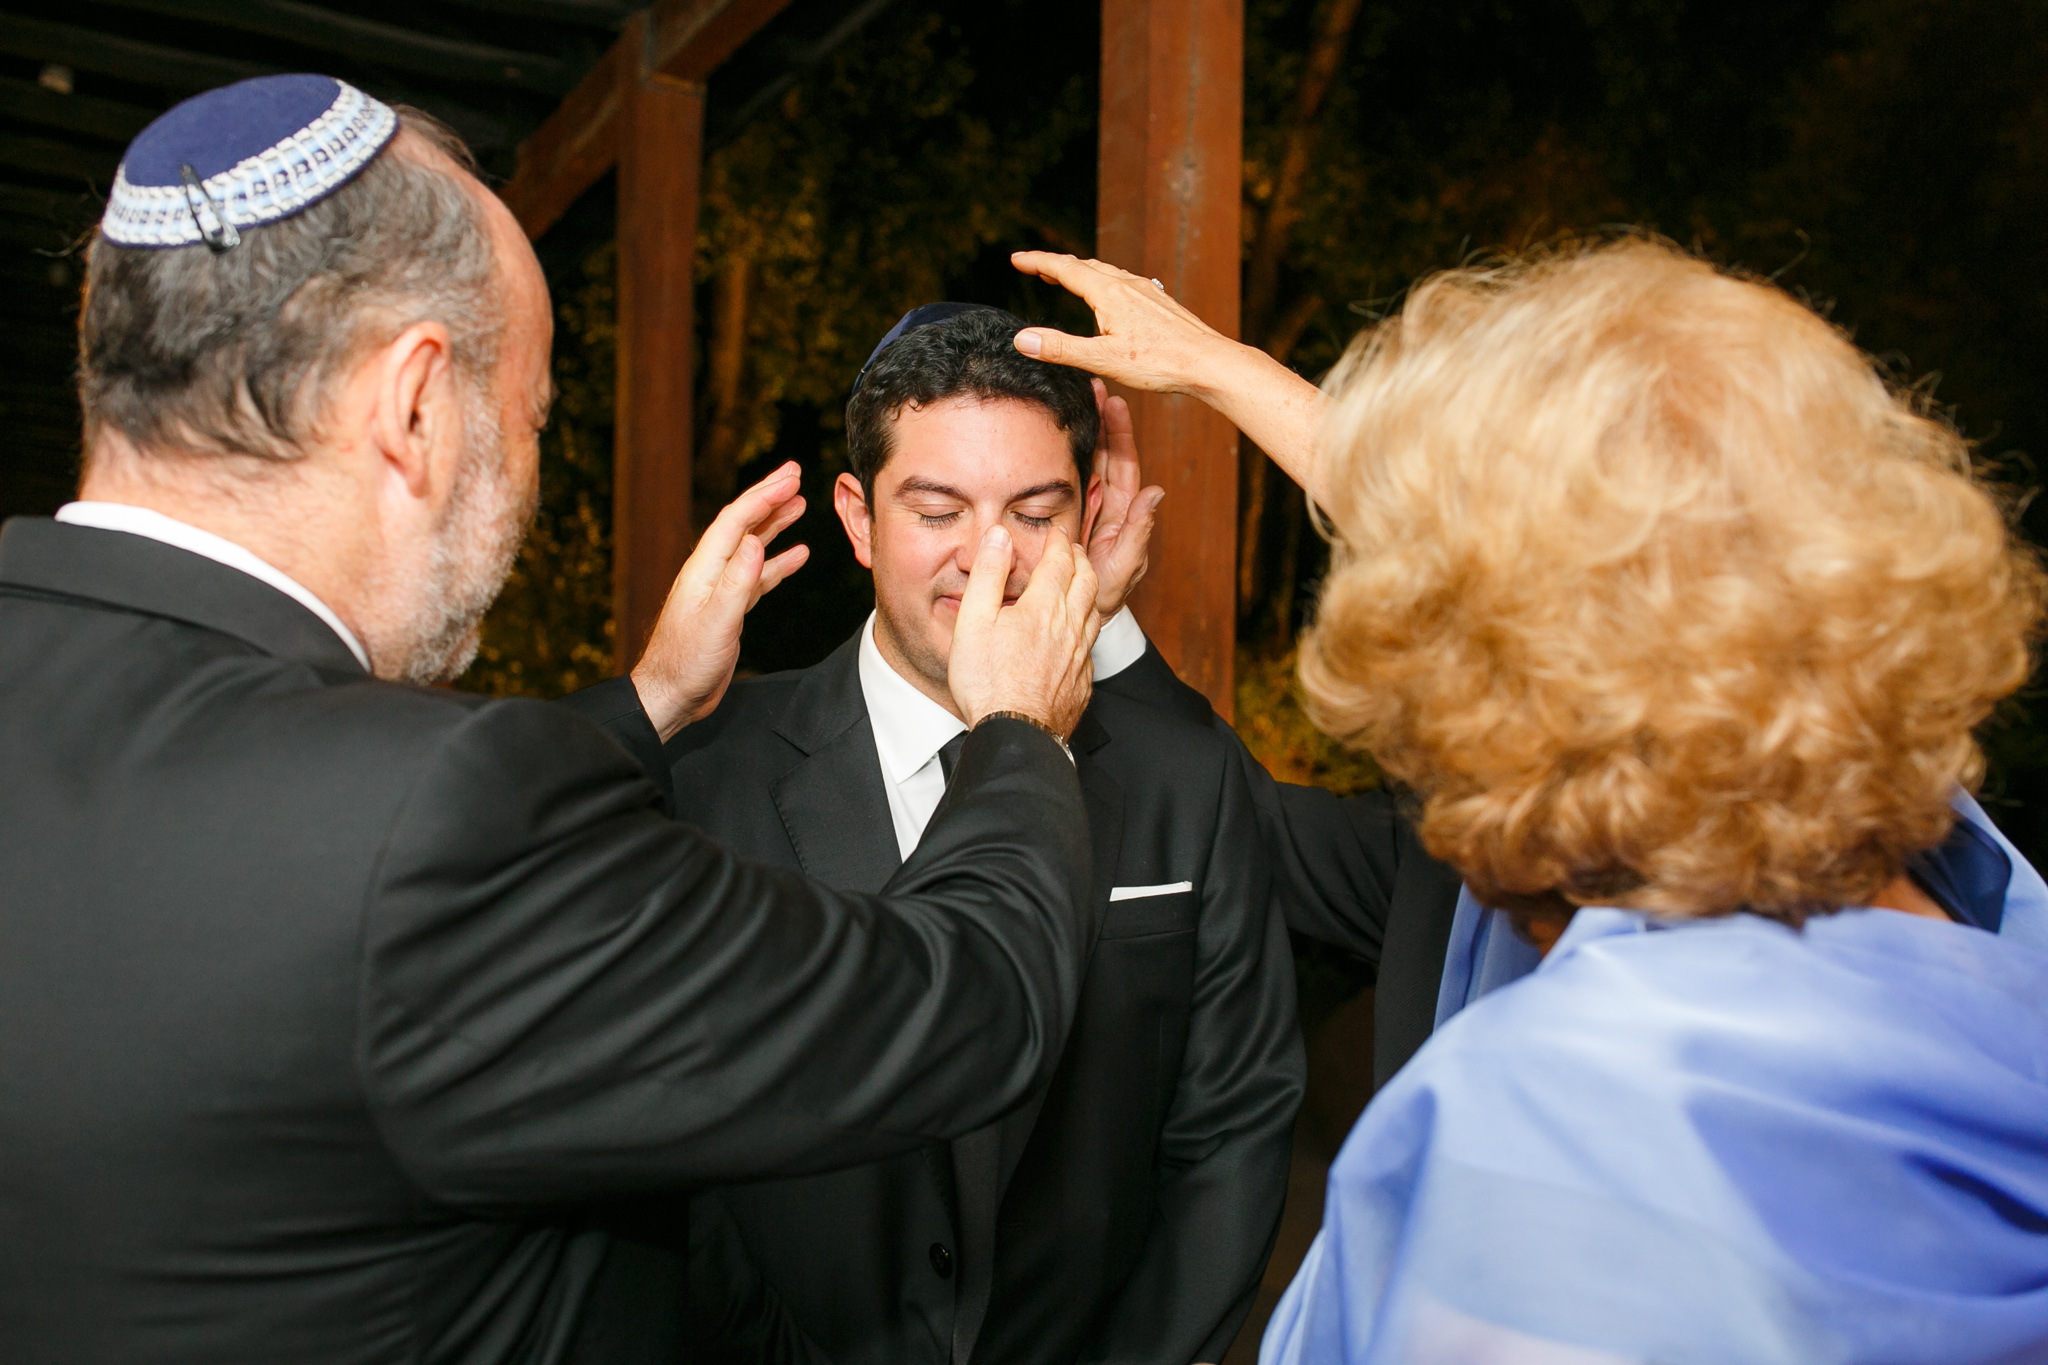 foto-Matrimonio-judio-vina-santa-carolina-santiago